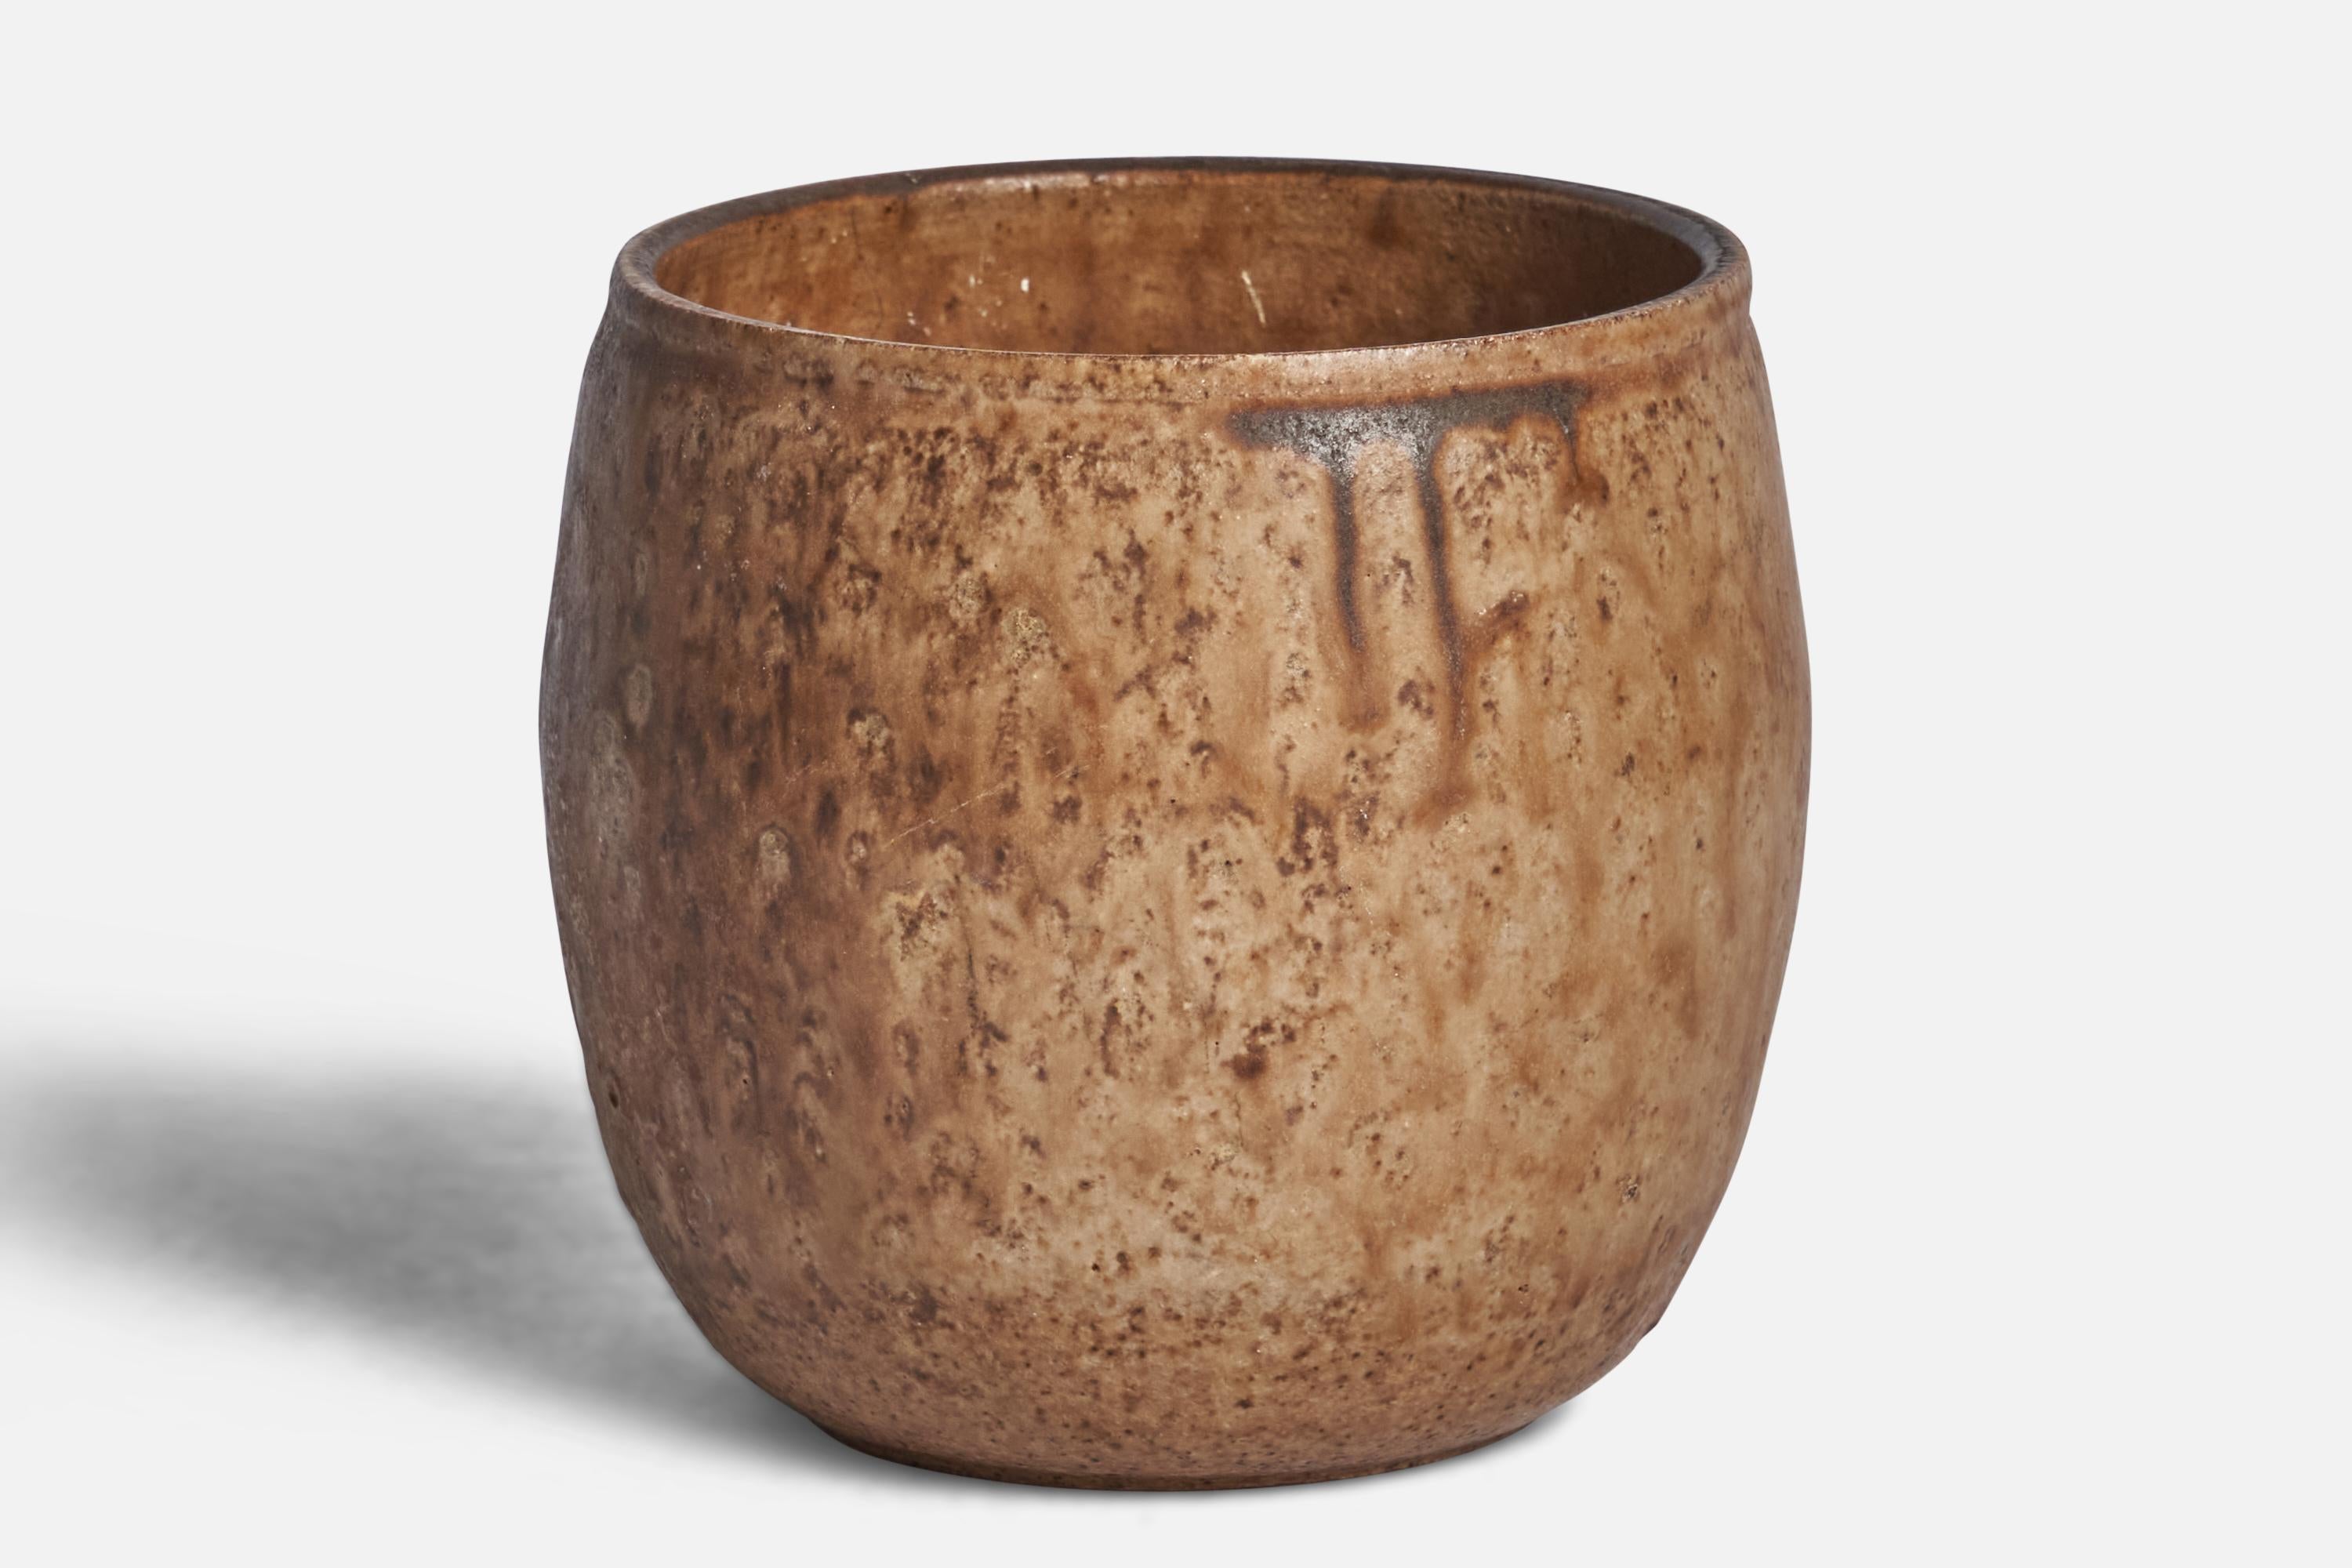 A beige and brown-glazed ceramic vase designed and produced by Birthe Möllerström, Sweden, 1970s.